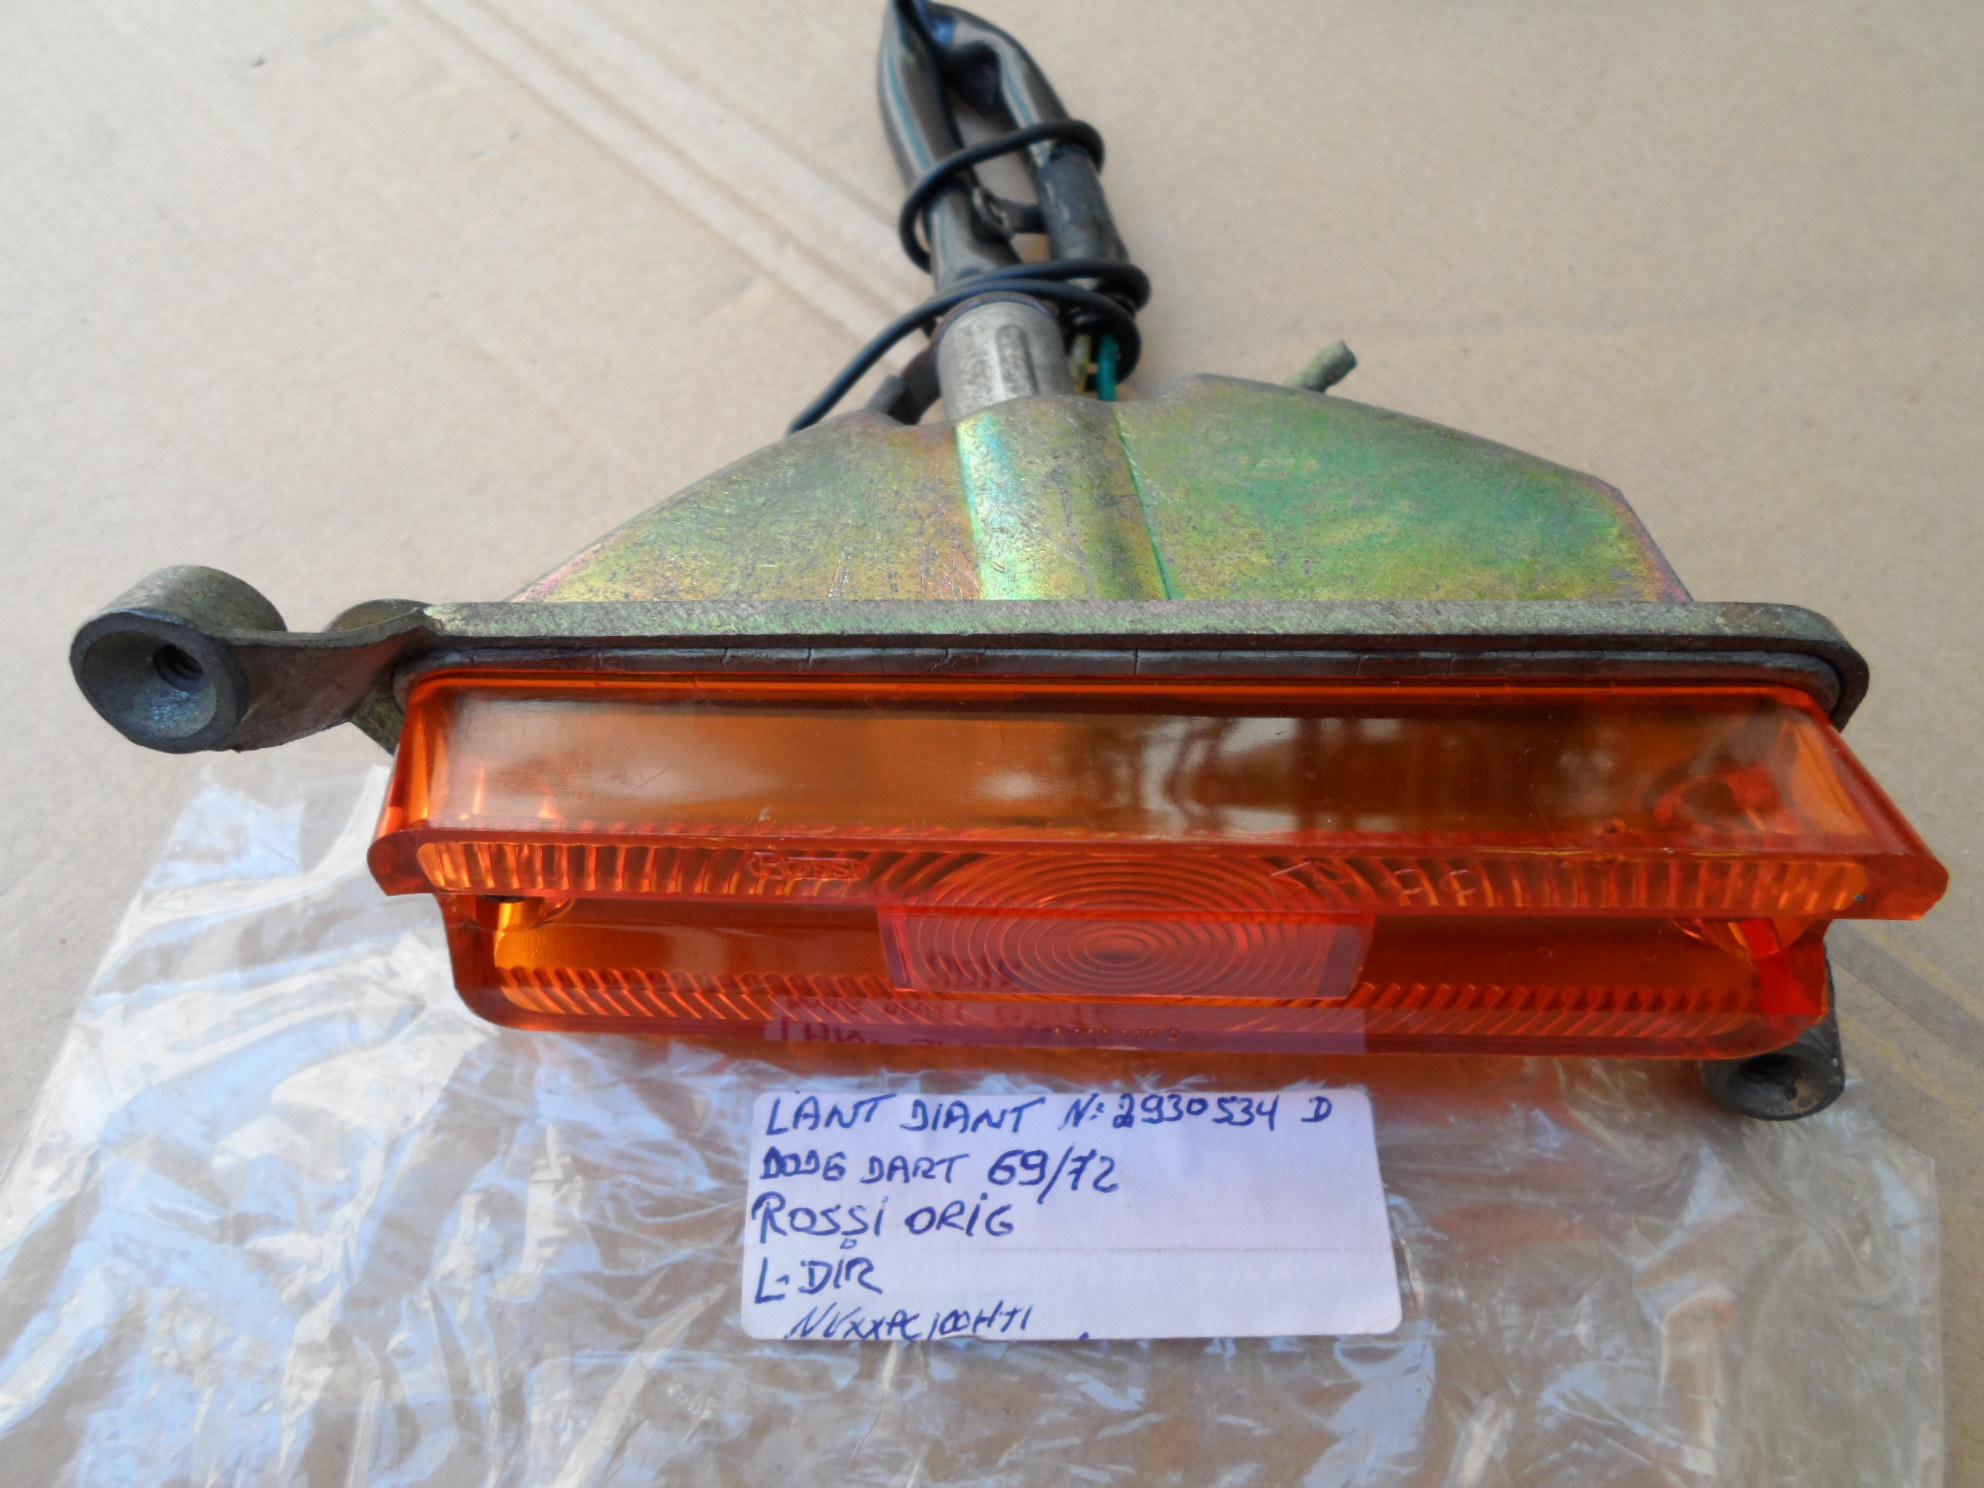 Lanterna Pisca Âmbar Original Rossi Dodge Dart 69/72 L/Dir